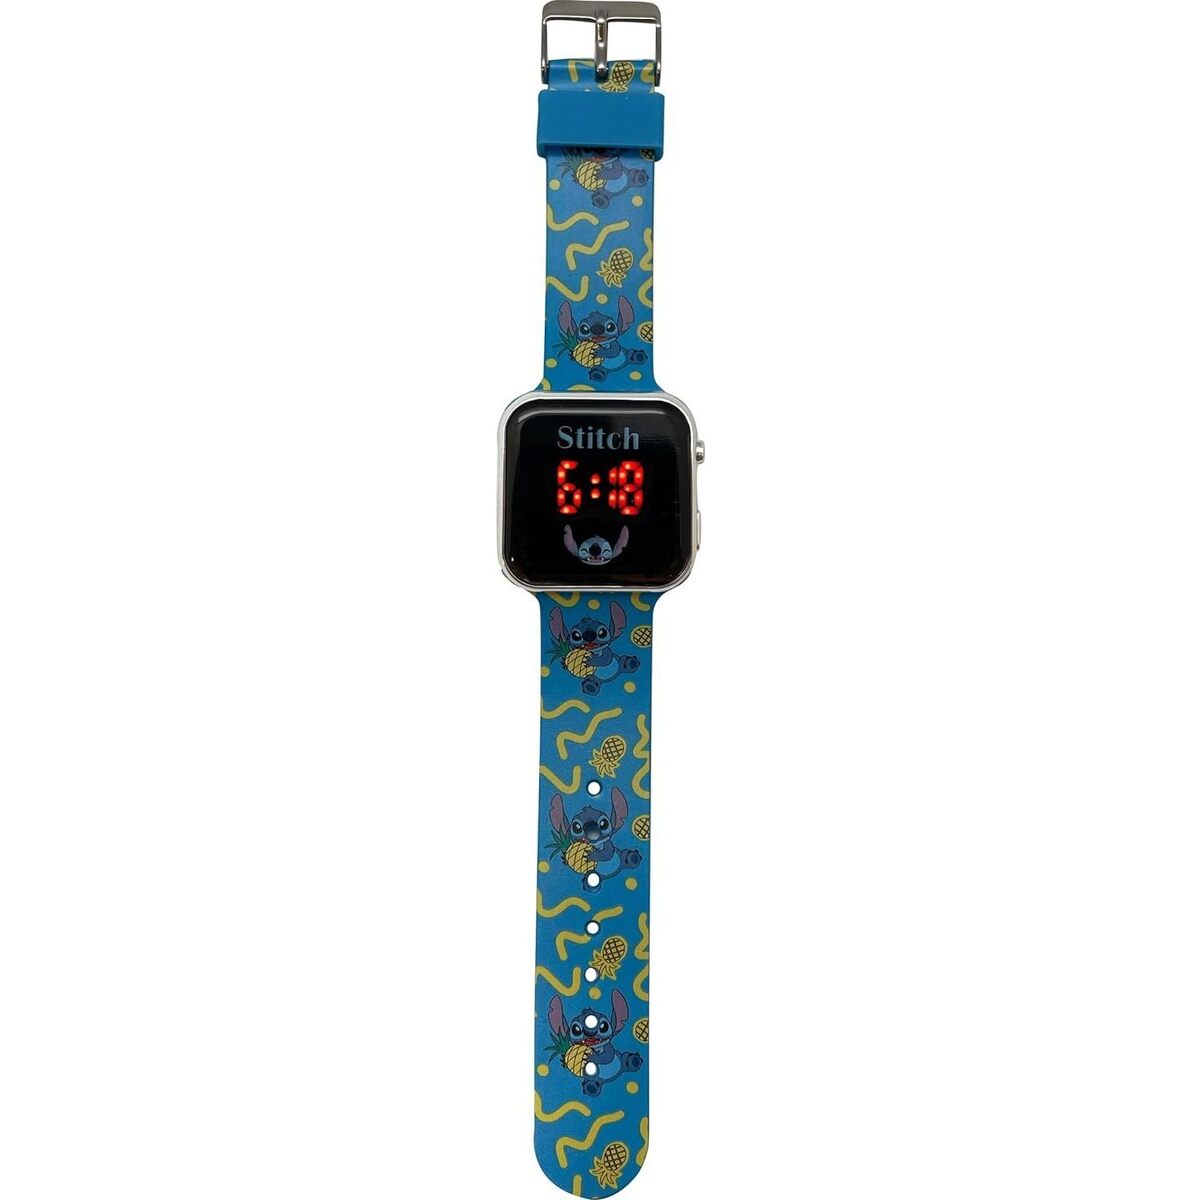 Candeeiros de teto Relógios Digitais Stitch  Azul